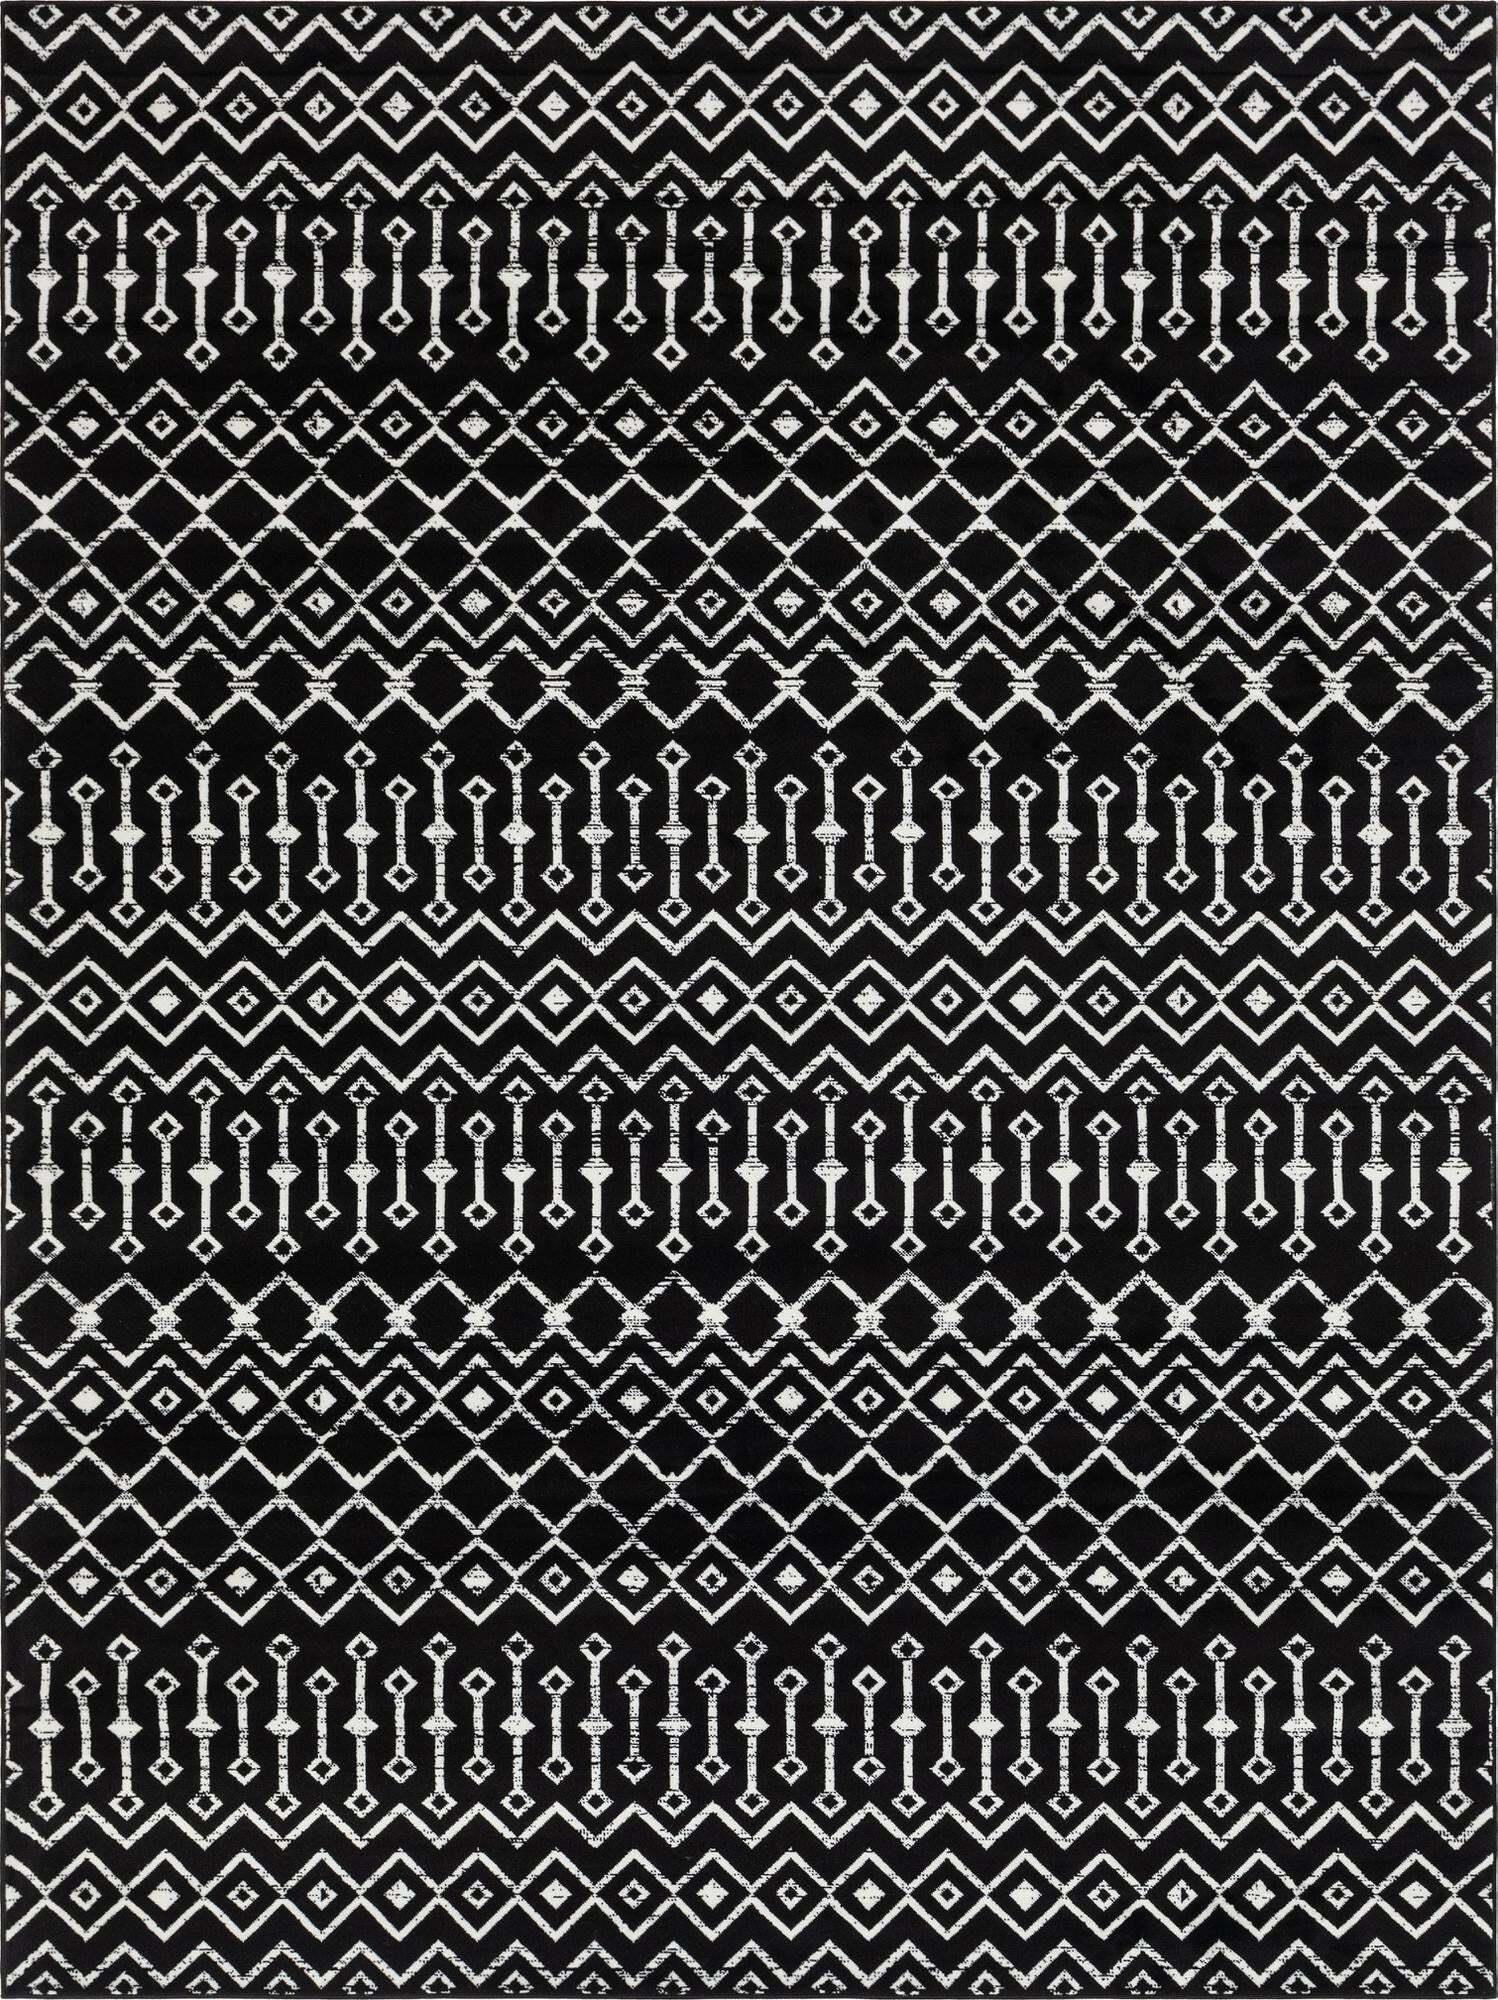 Unique Loom Indoor Rugs - Moroccan Trellis Geometric Rectangular 9x12 Rug Black & Ivory